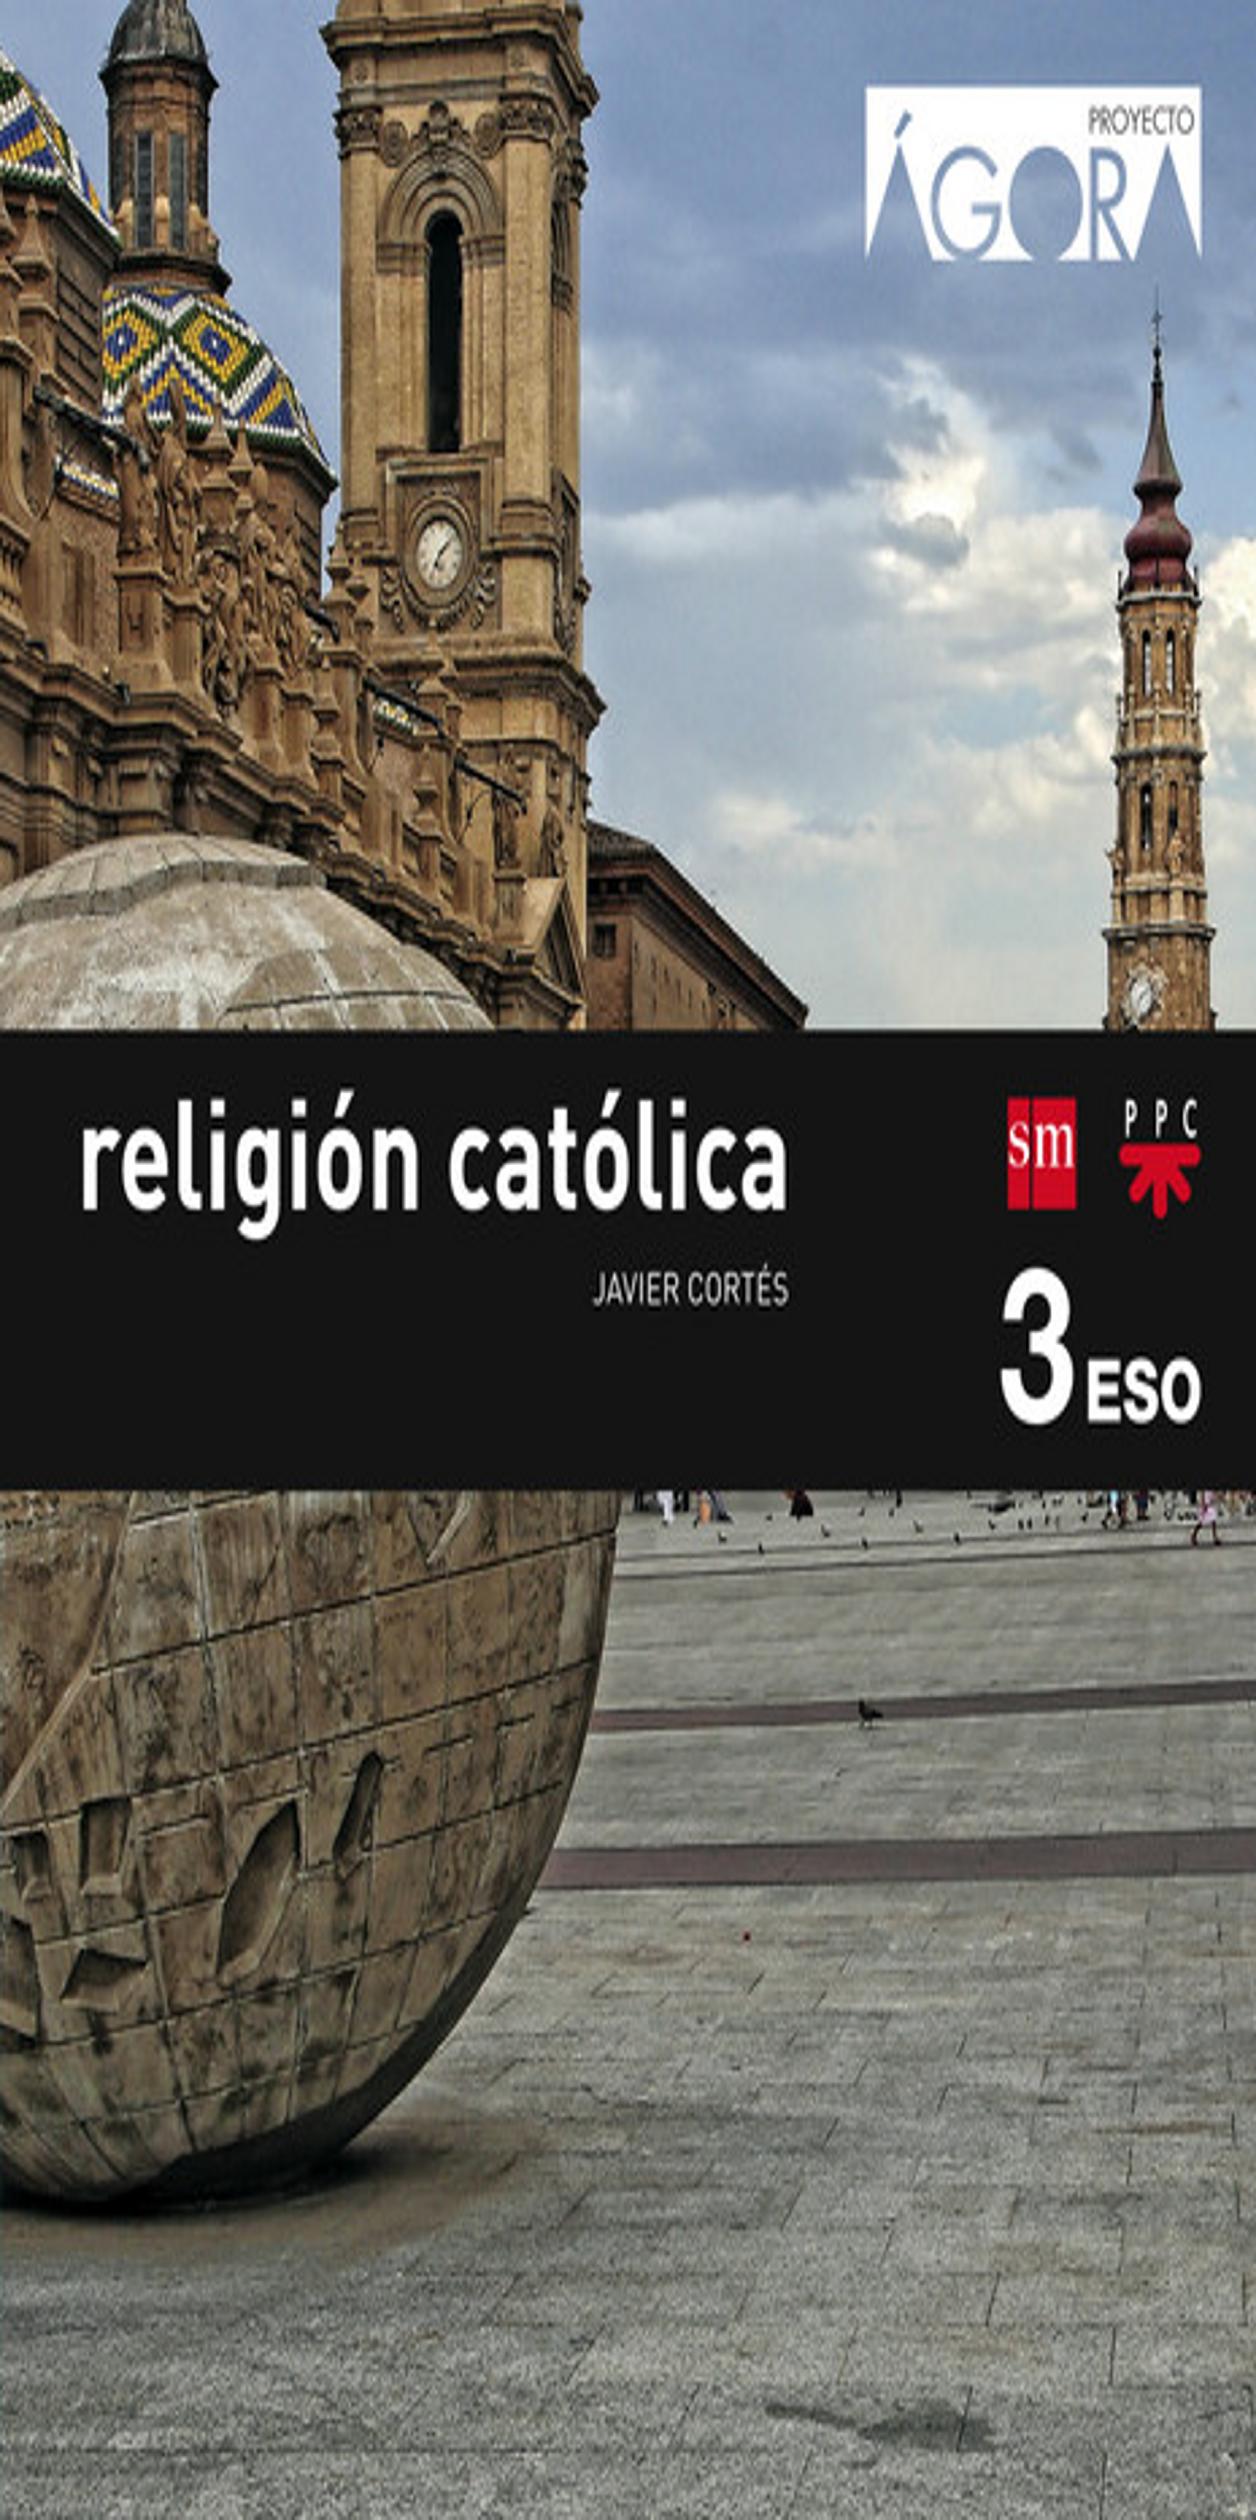 RELIGION CATOLICA 3 ESO Agora